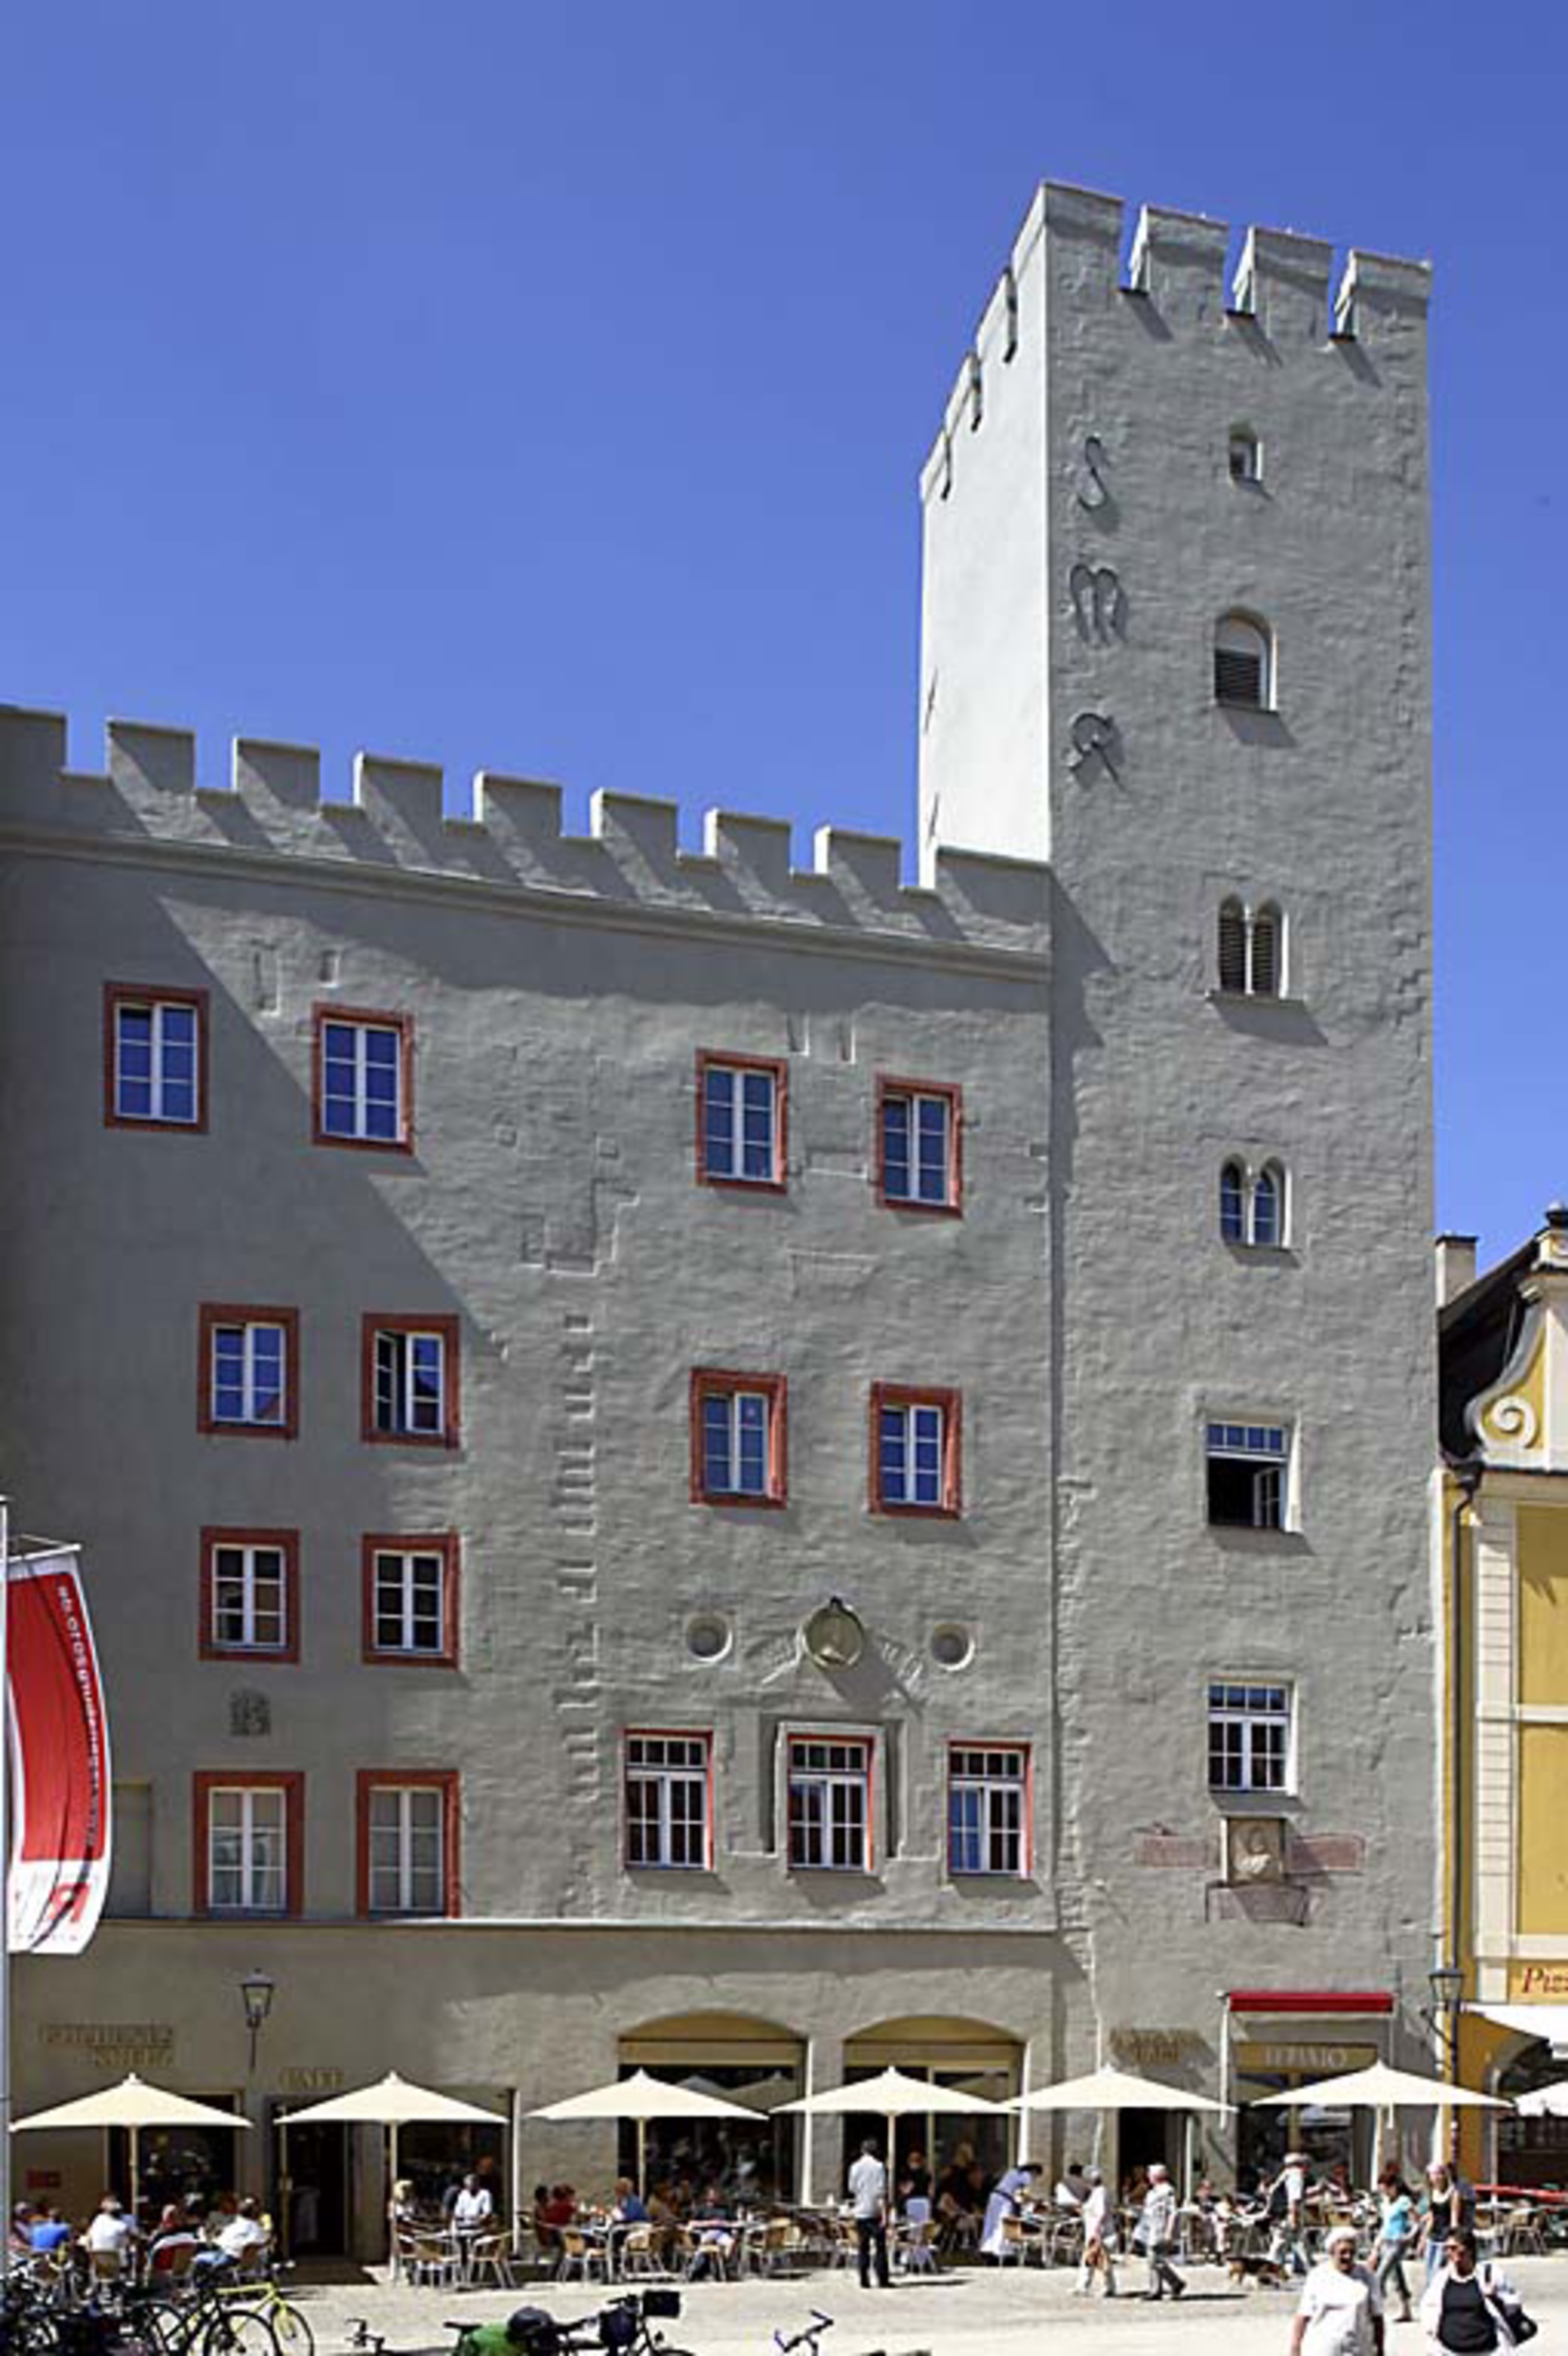 Hotel Goldenes Kreuz, Regensburg.
